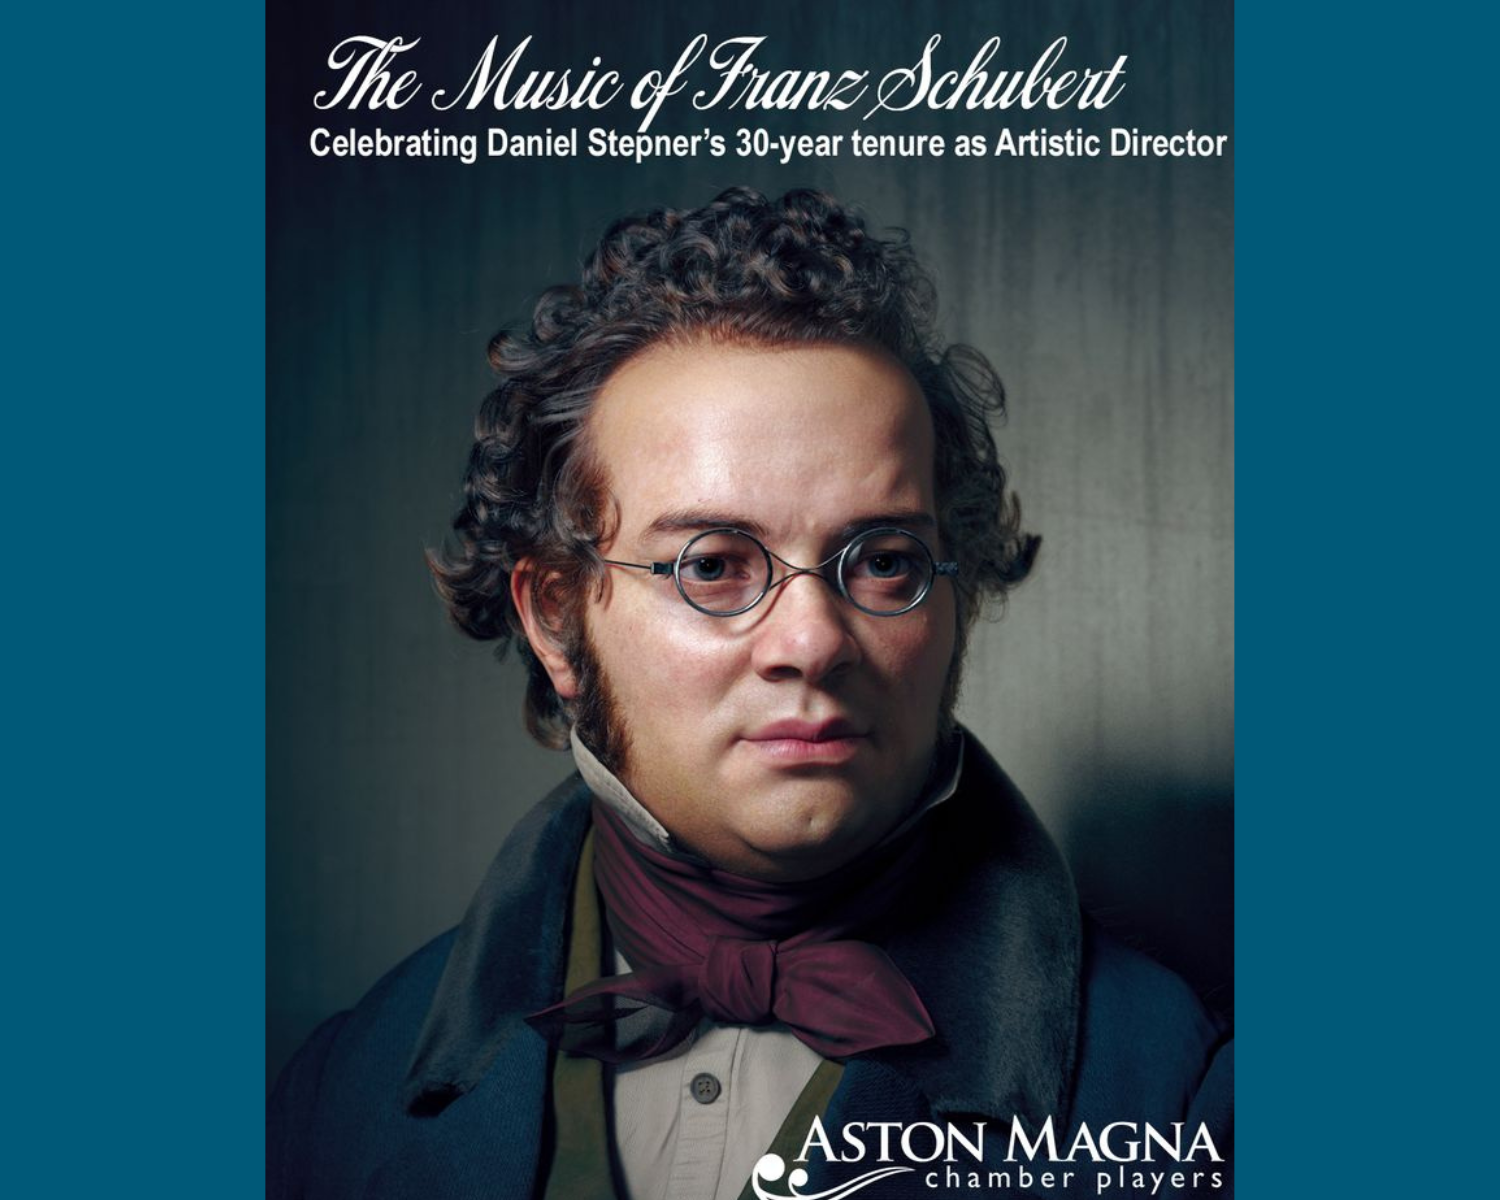 Aston Magna Chamber Players: The Music of Franz Schubert